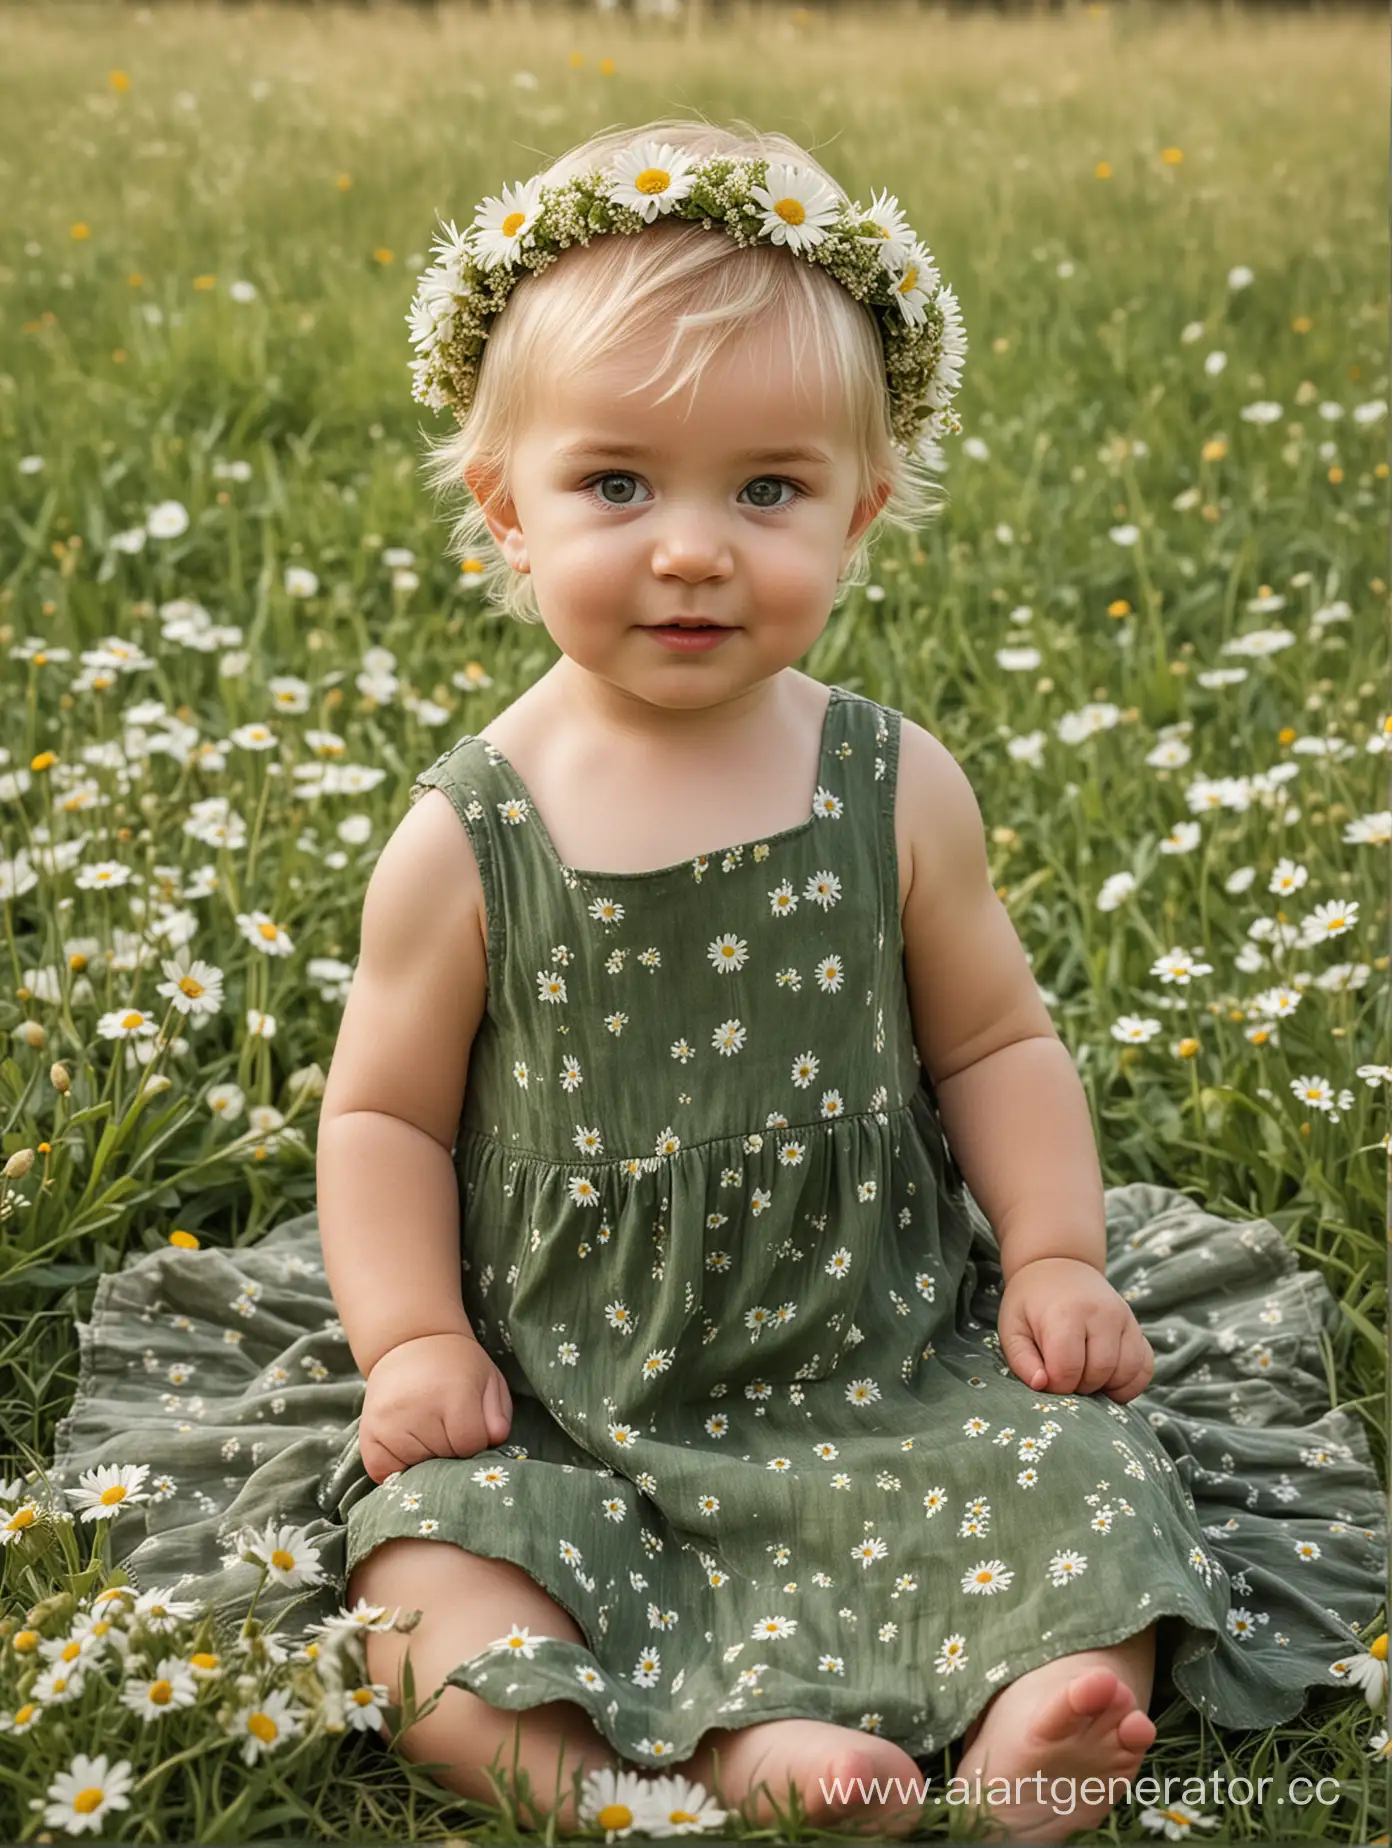 девочка младенец 1 год короткие русые волосы, пышное зелёное платье сит в поле с ромашками, на голове венок с ромашек полевых цветов, фон тестура мазки кисти холст 